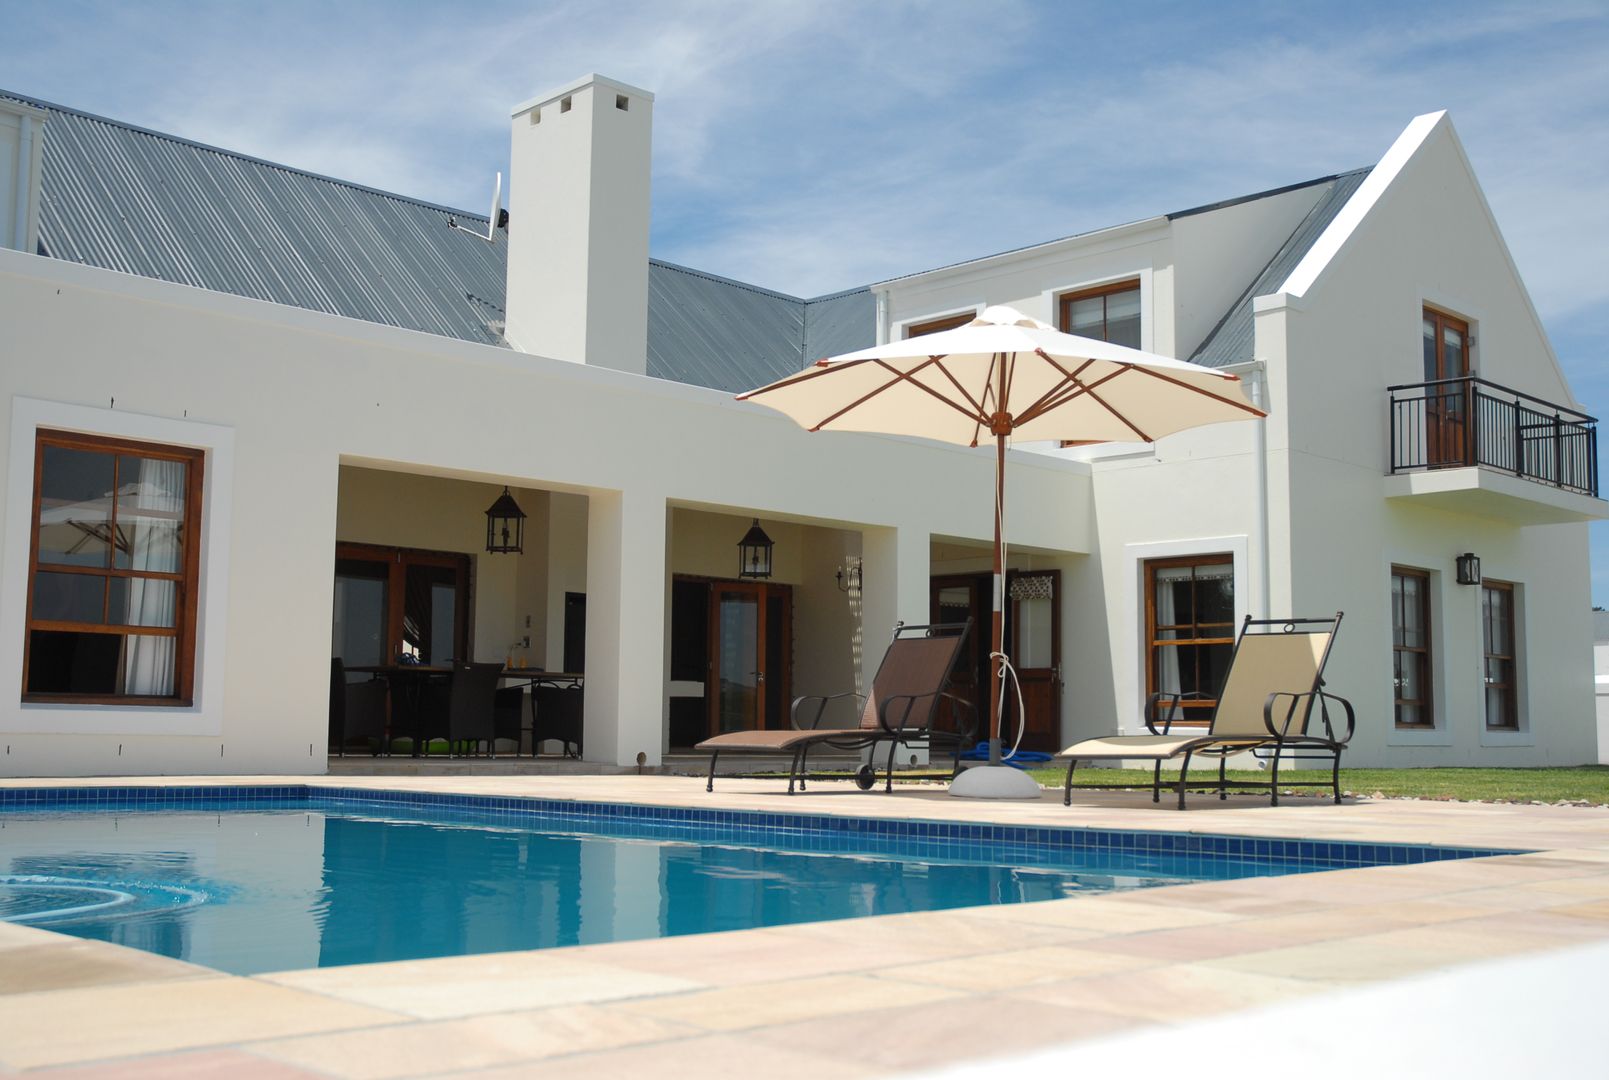 House Grobler, De Zalze Winelands & Golf Estate (Stellenbosch), Reinier Brönn Architects & Associates Reinier Brönn Architects & Associates Rumah Minimalis